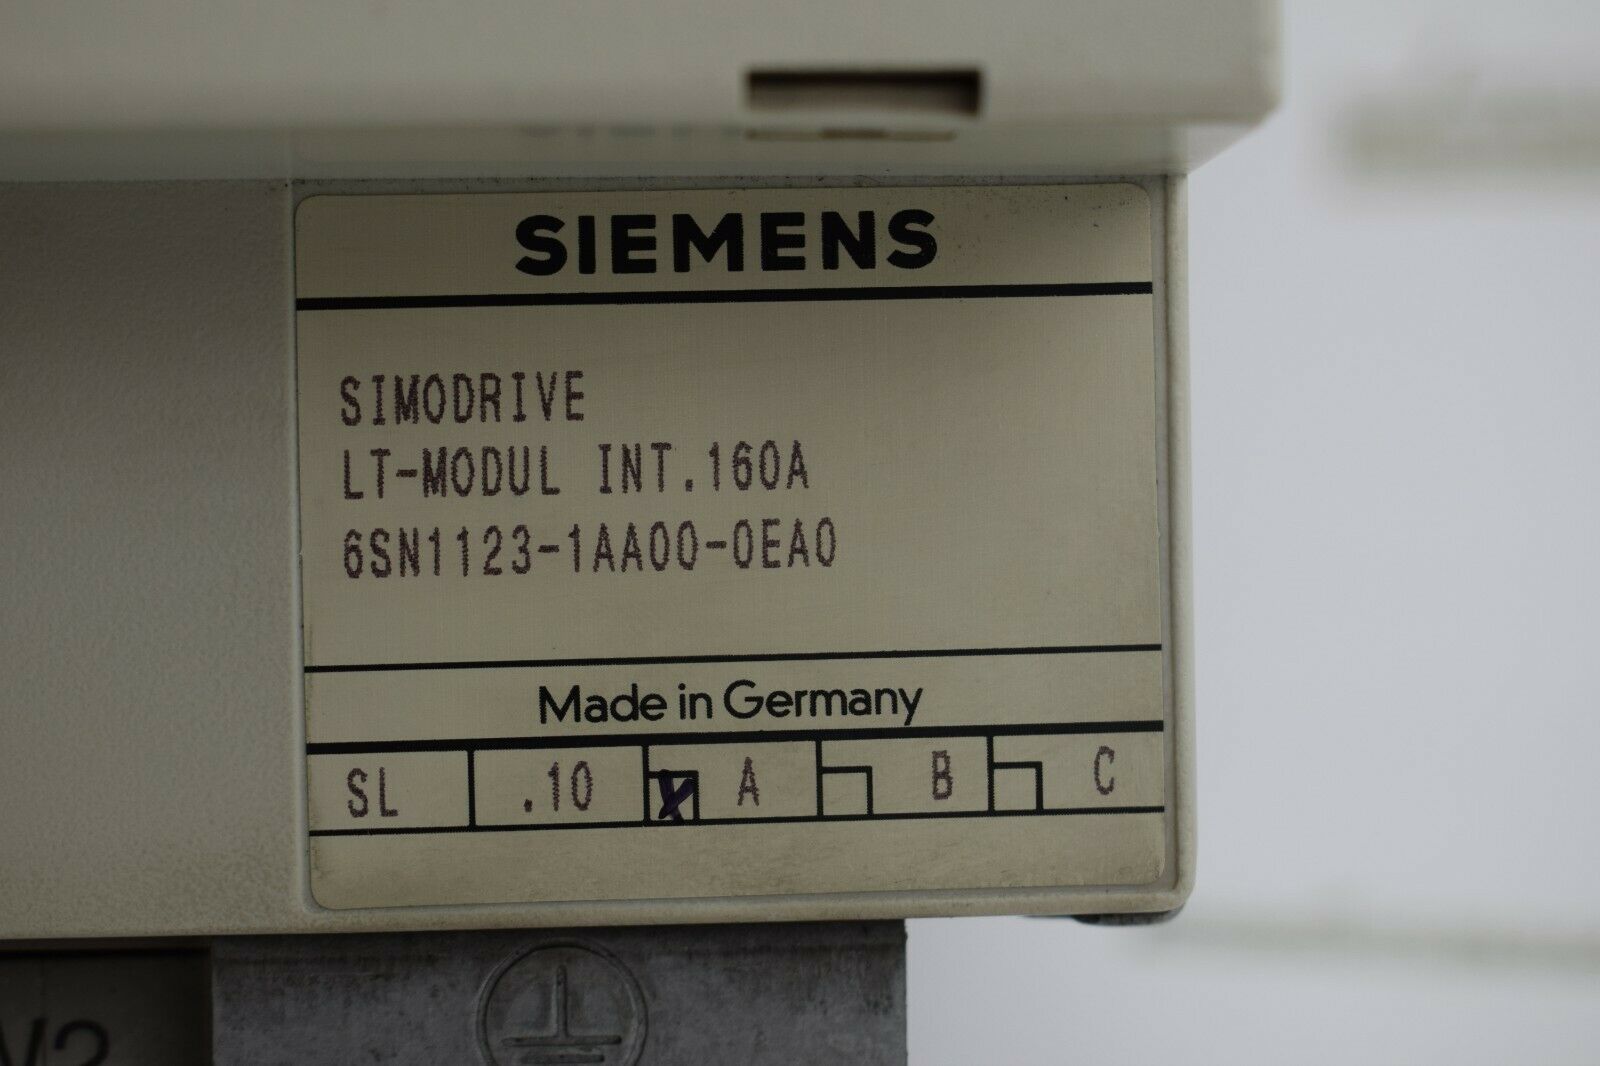 Siemens simodrive LT-Modul 6SN1 123-1AA00-0EA0 ( 6SN1123-1AA00-0EA0 ) V.A